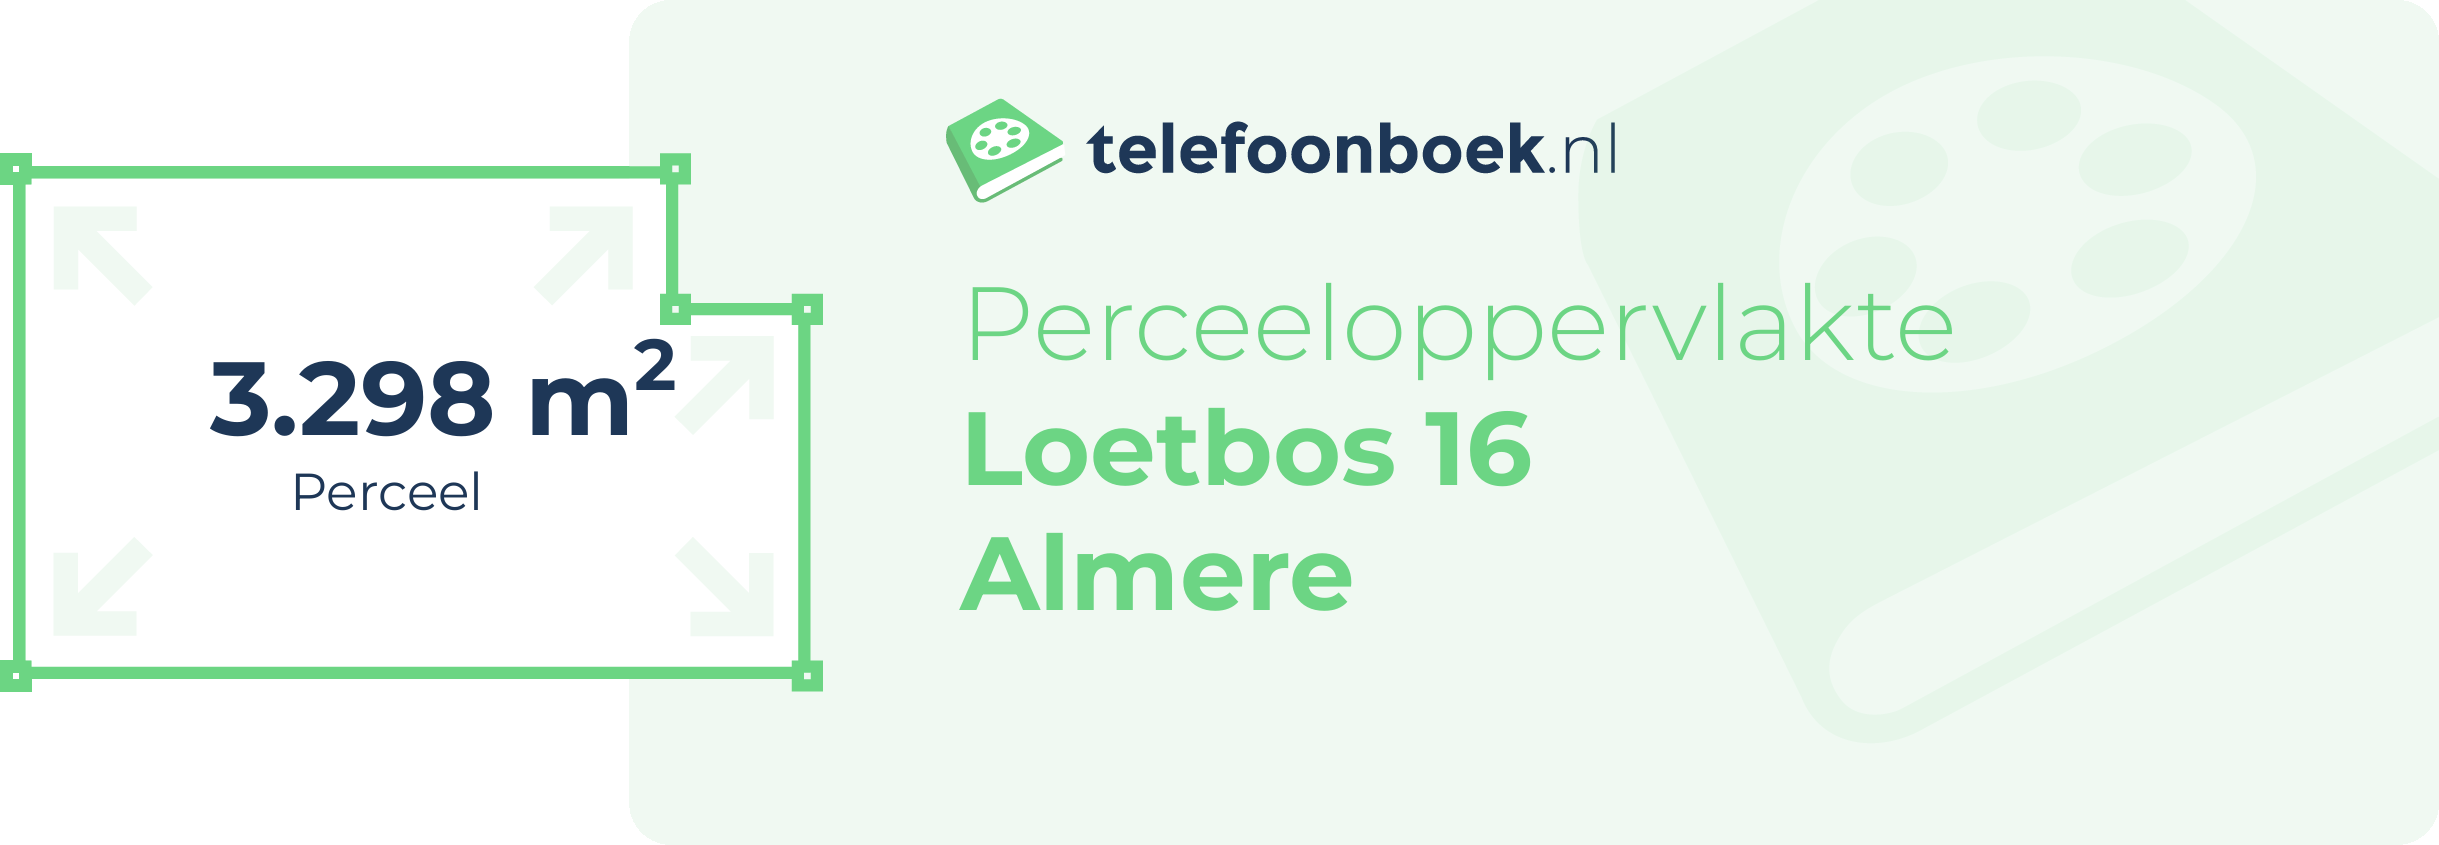 Perceeloppervlakte Loetbos 16 Almere